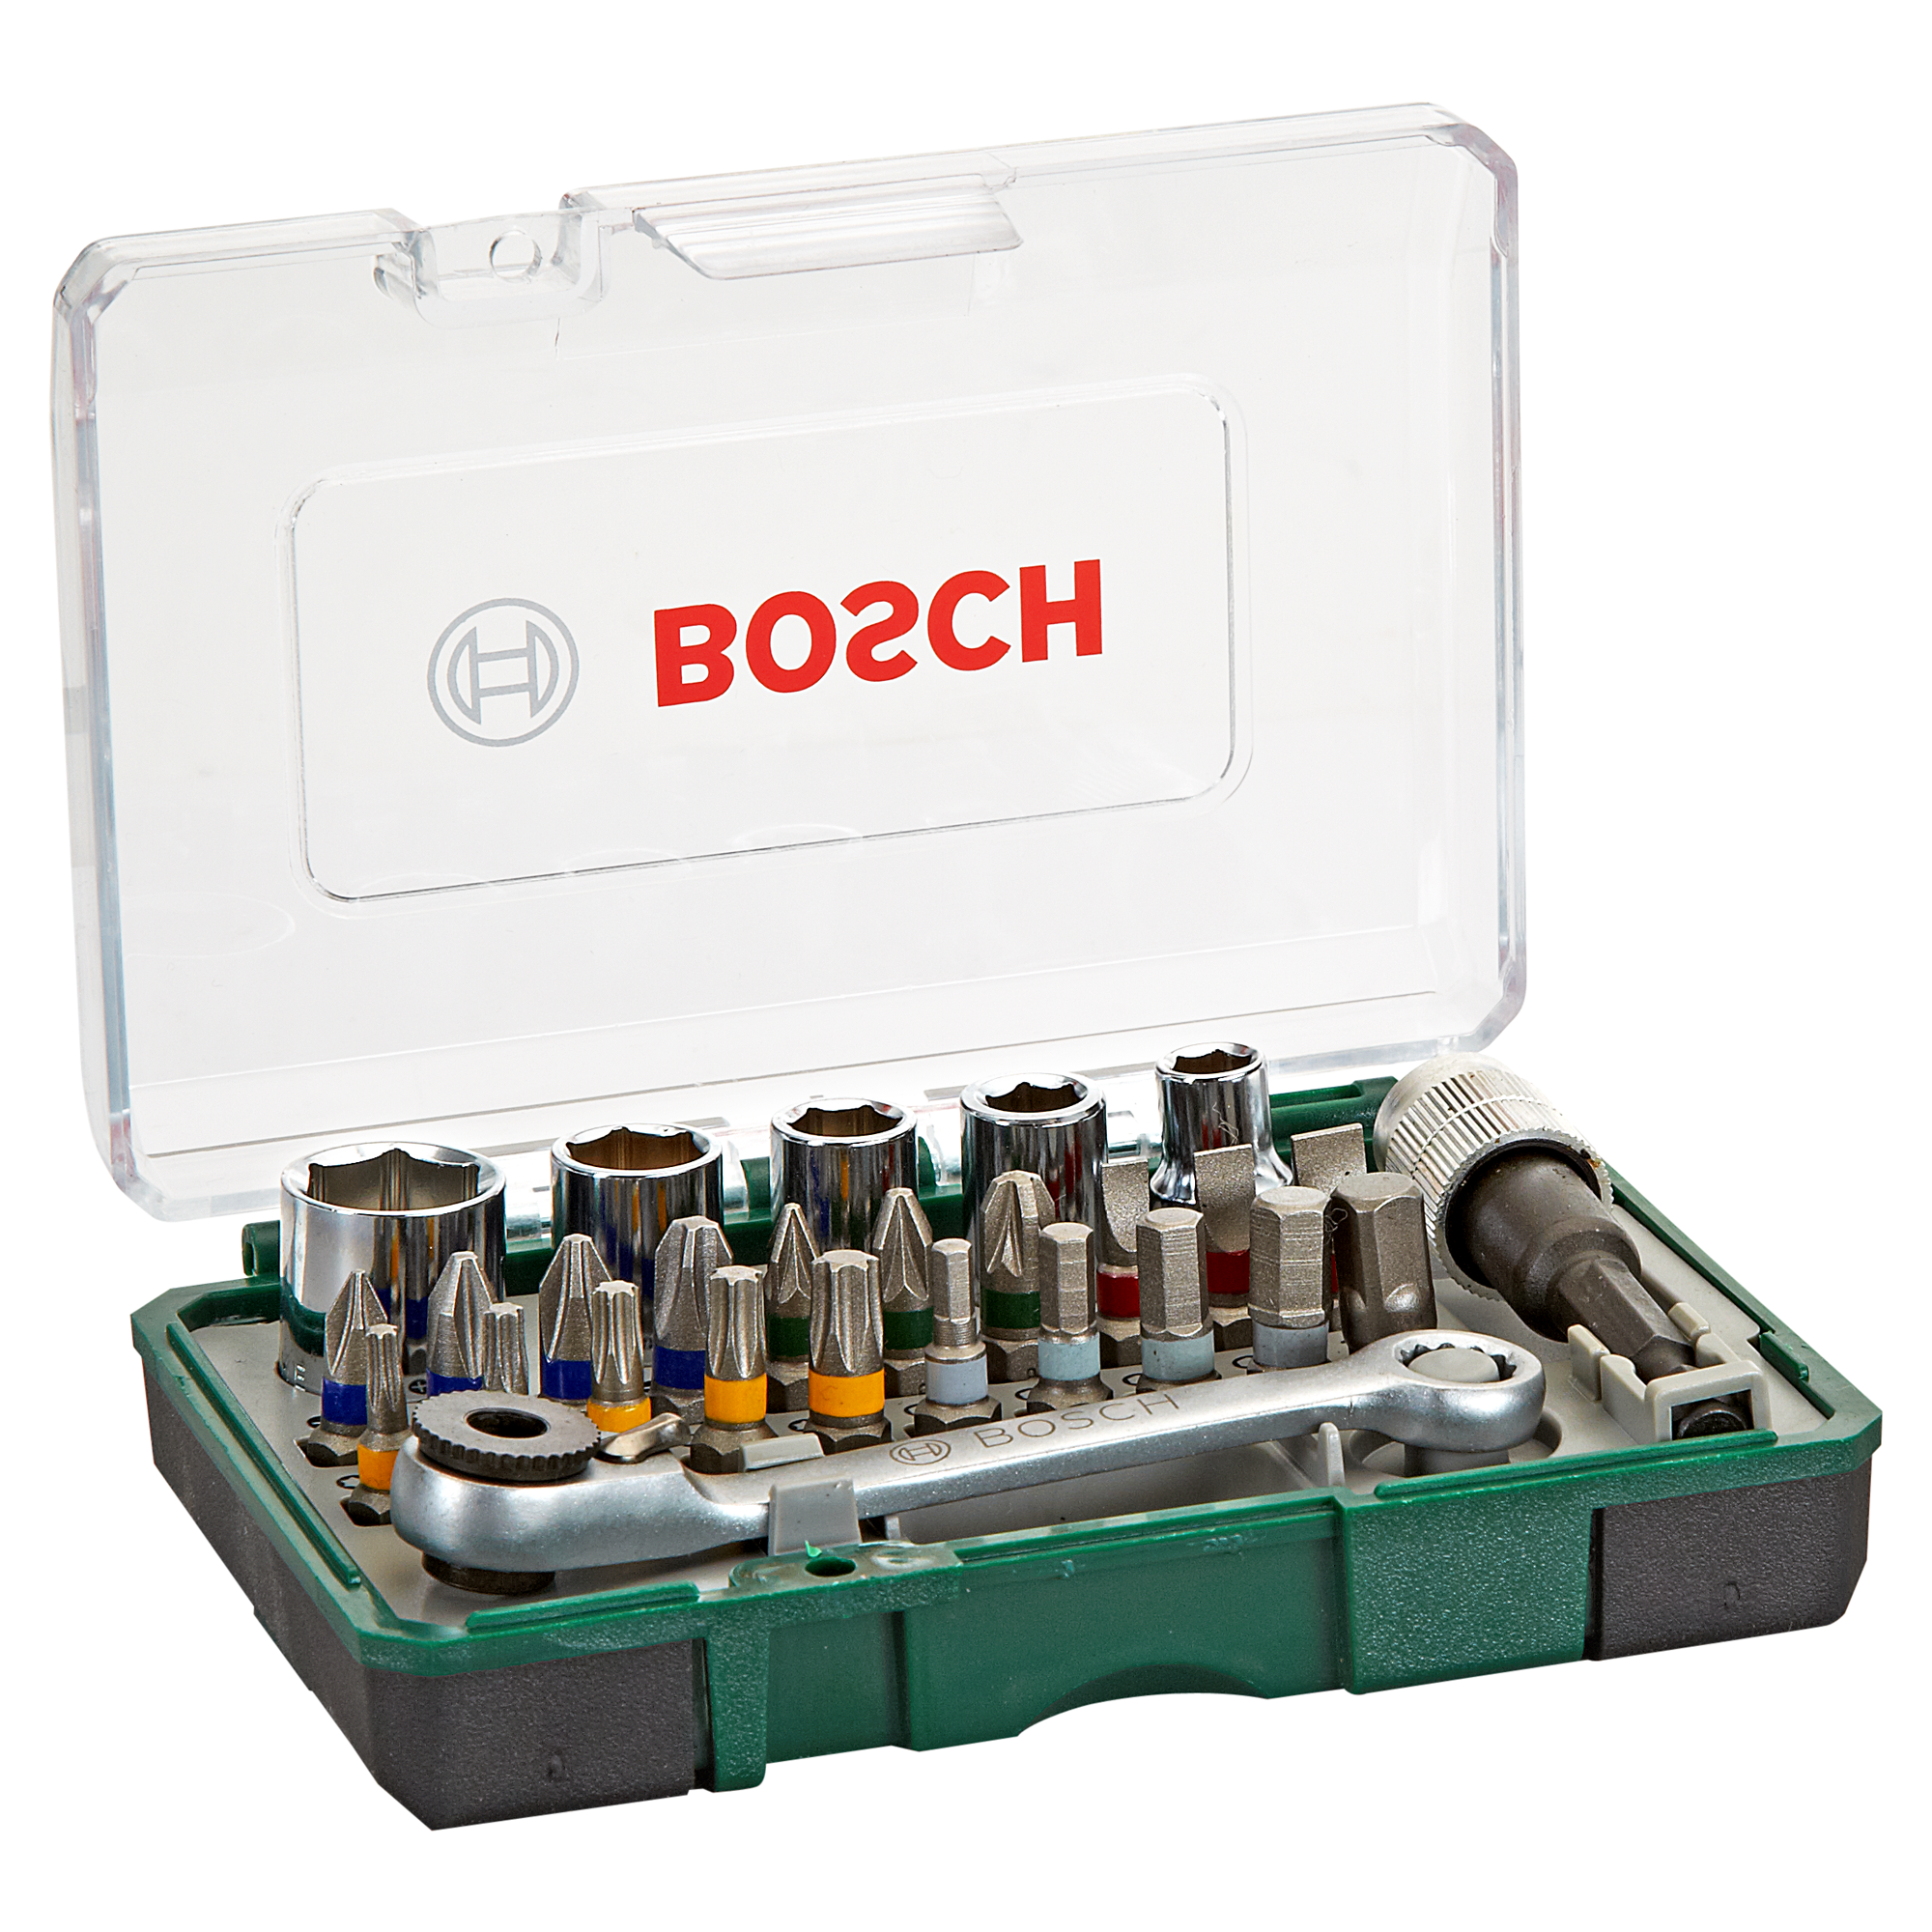 Bosch 27tlg Schrauberbit und Ratschen-Set Extra harte Qualitaet, Zubehoer Boh 